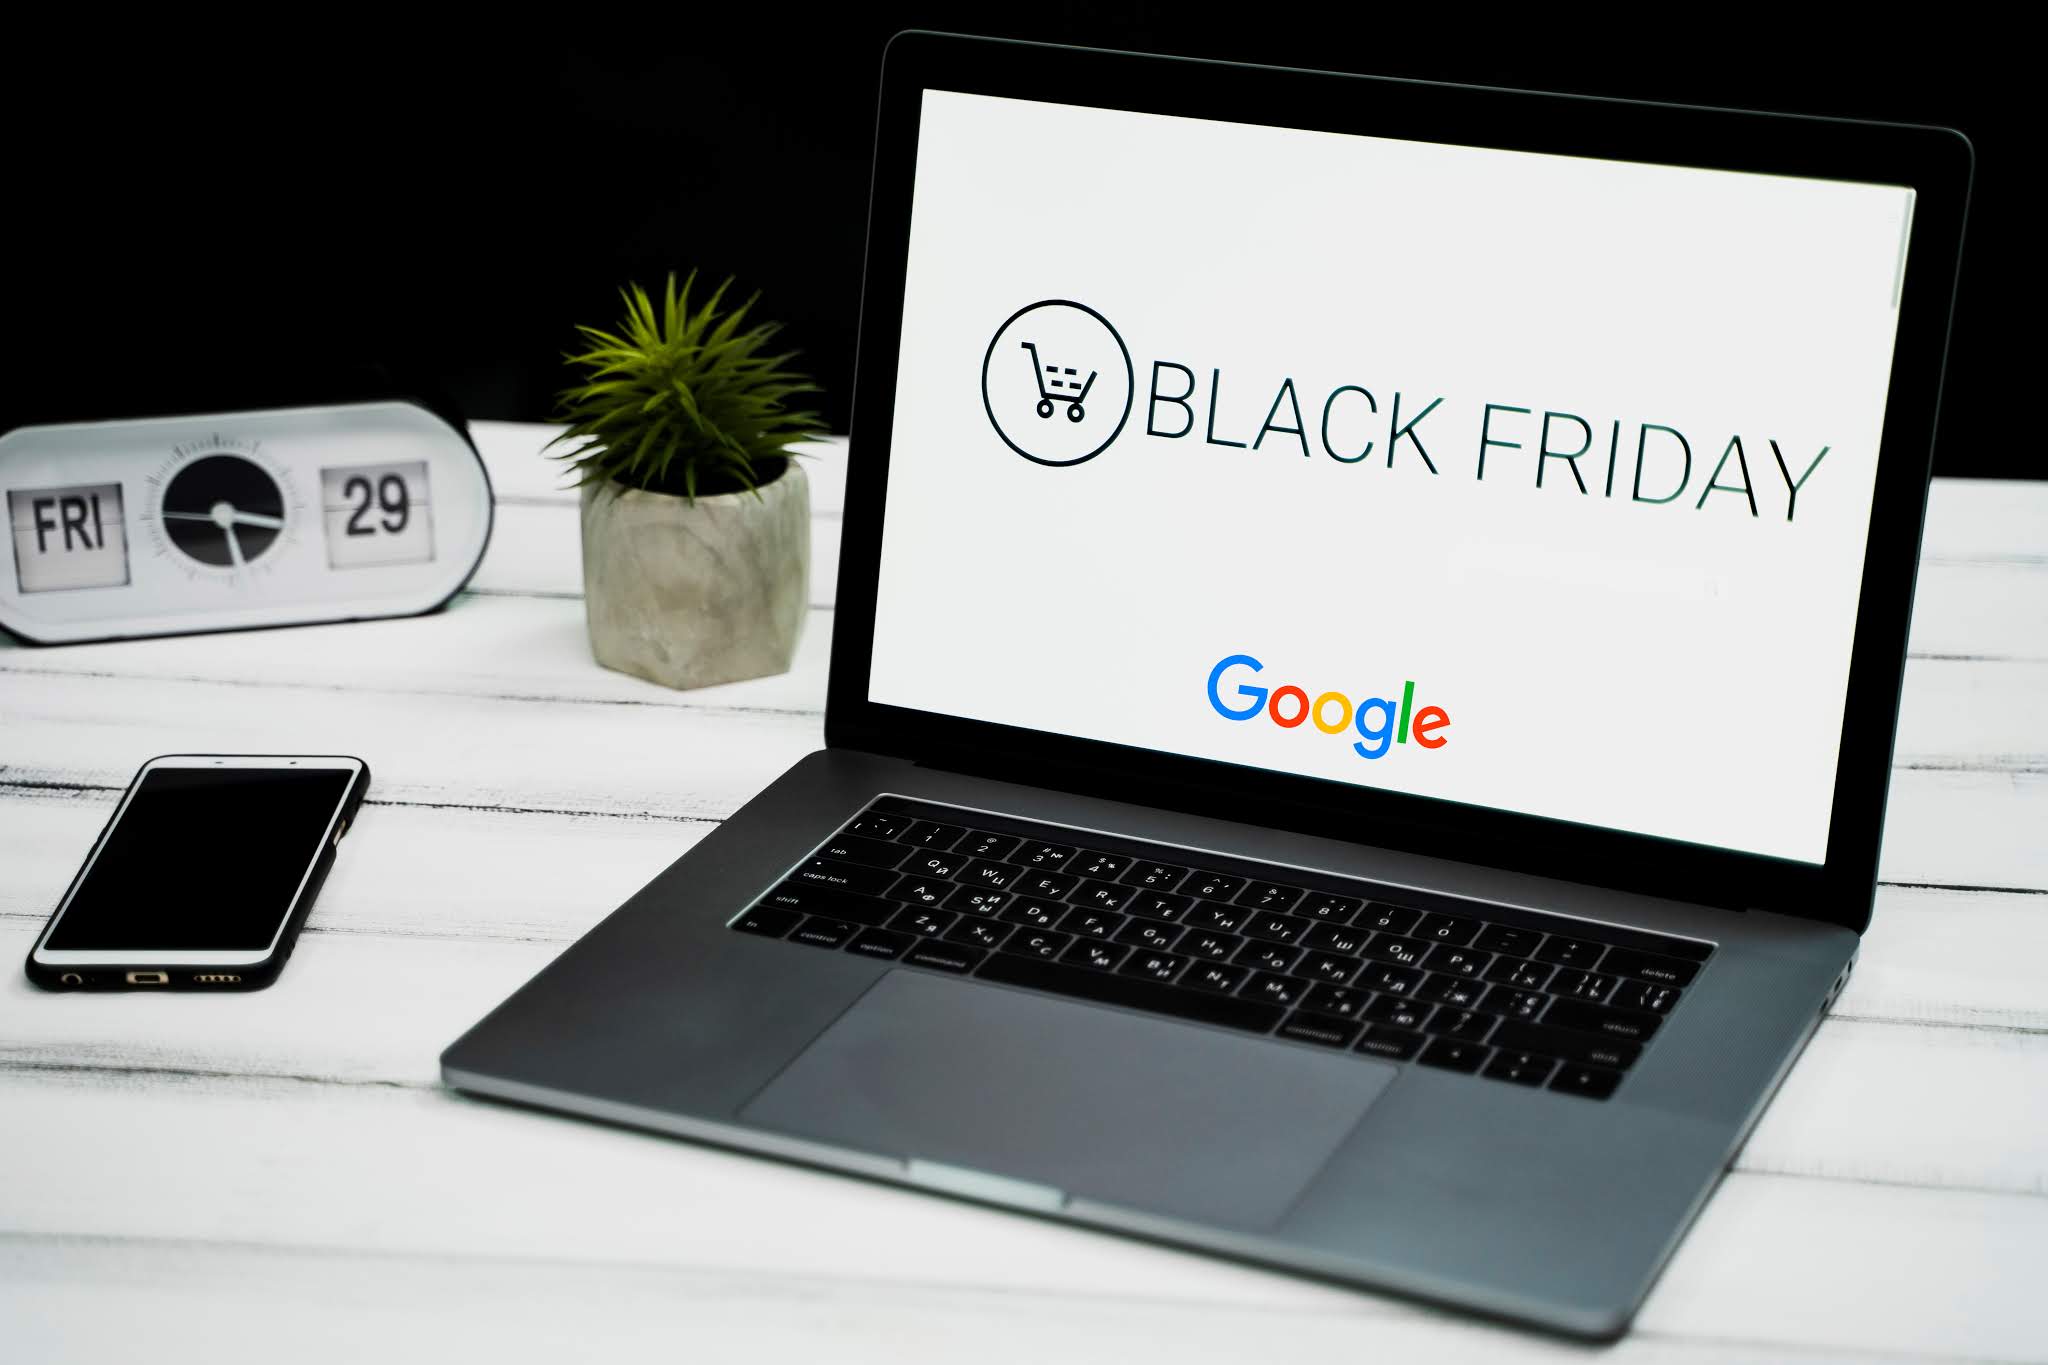 Black Friday Google traz insights sobre uma das datas mais importantes